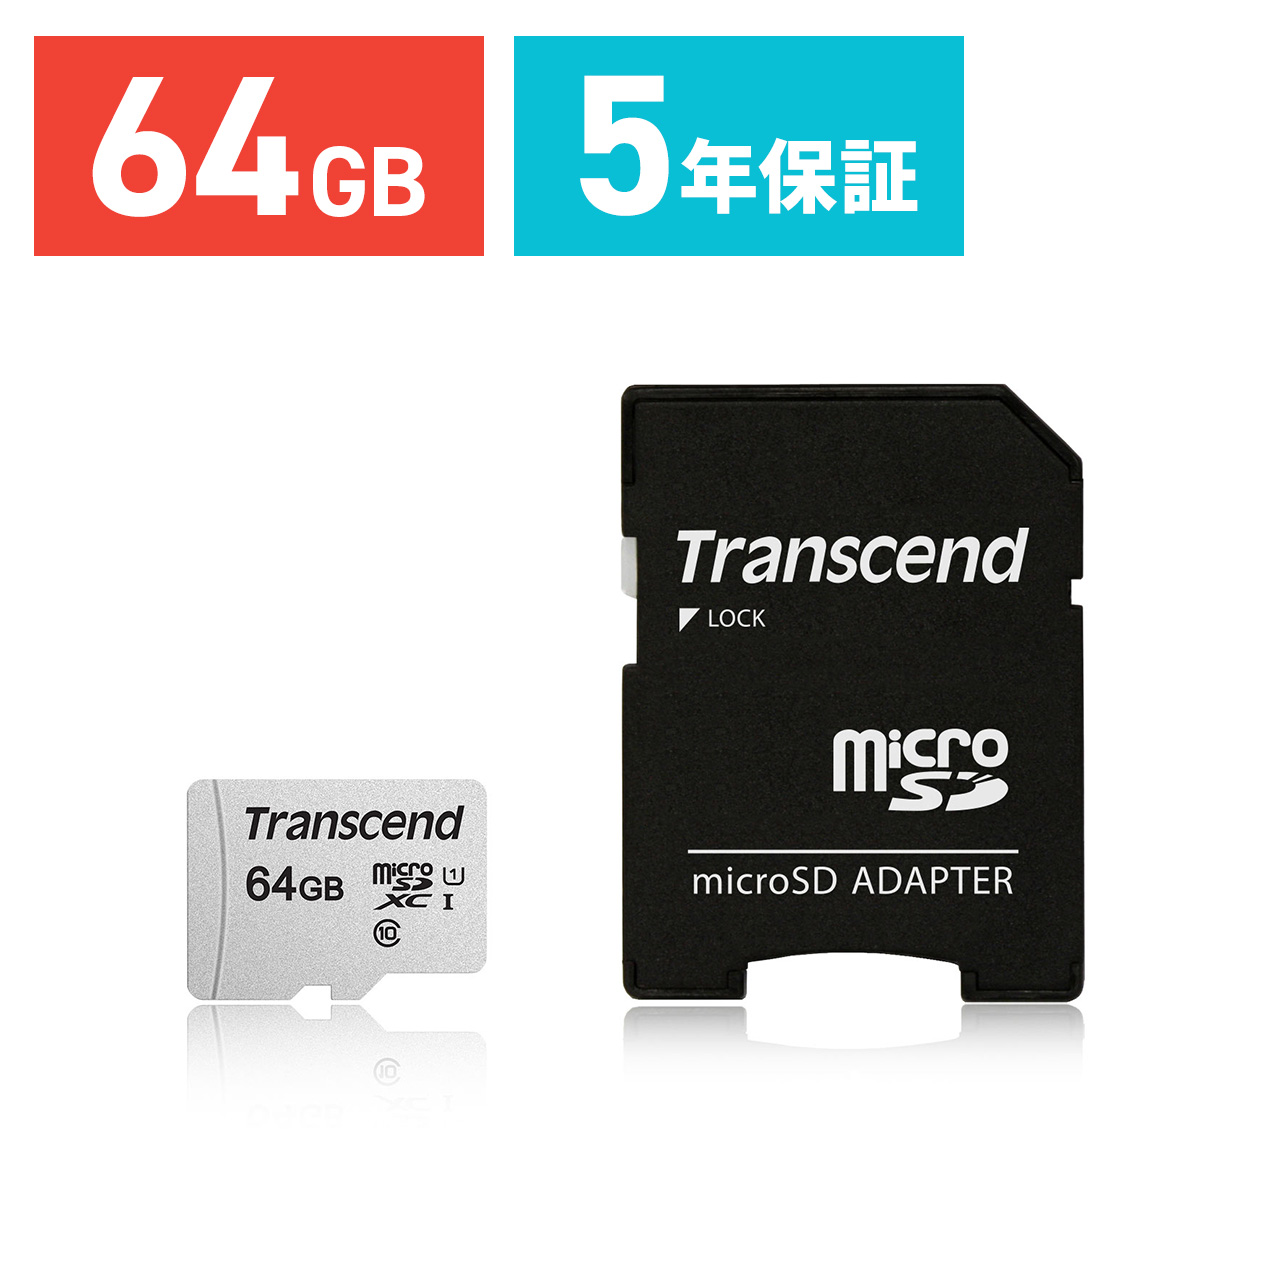 日本全国 送料無料 microSDXCカード 64GB マイクロSD Class10 UHS-I U1 SD変換アダプタ